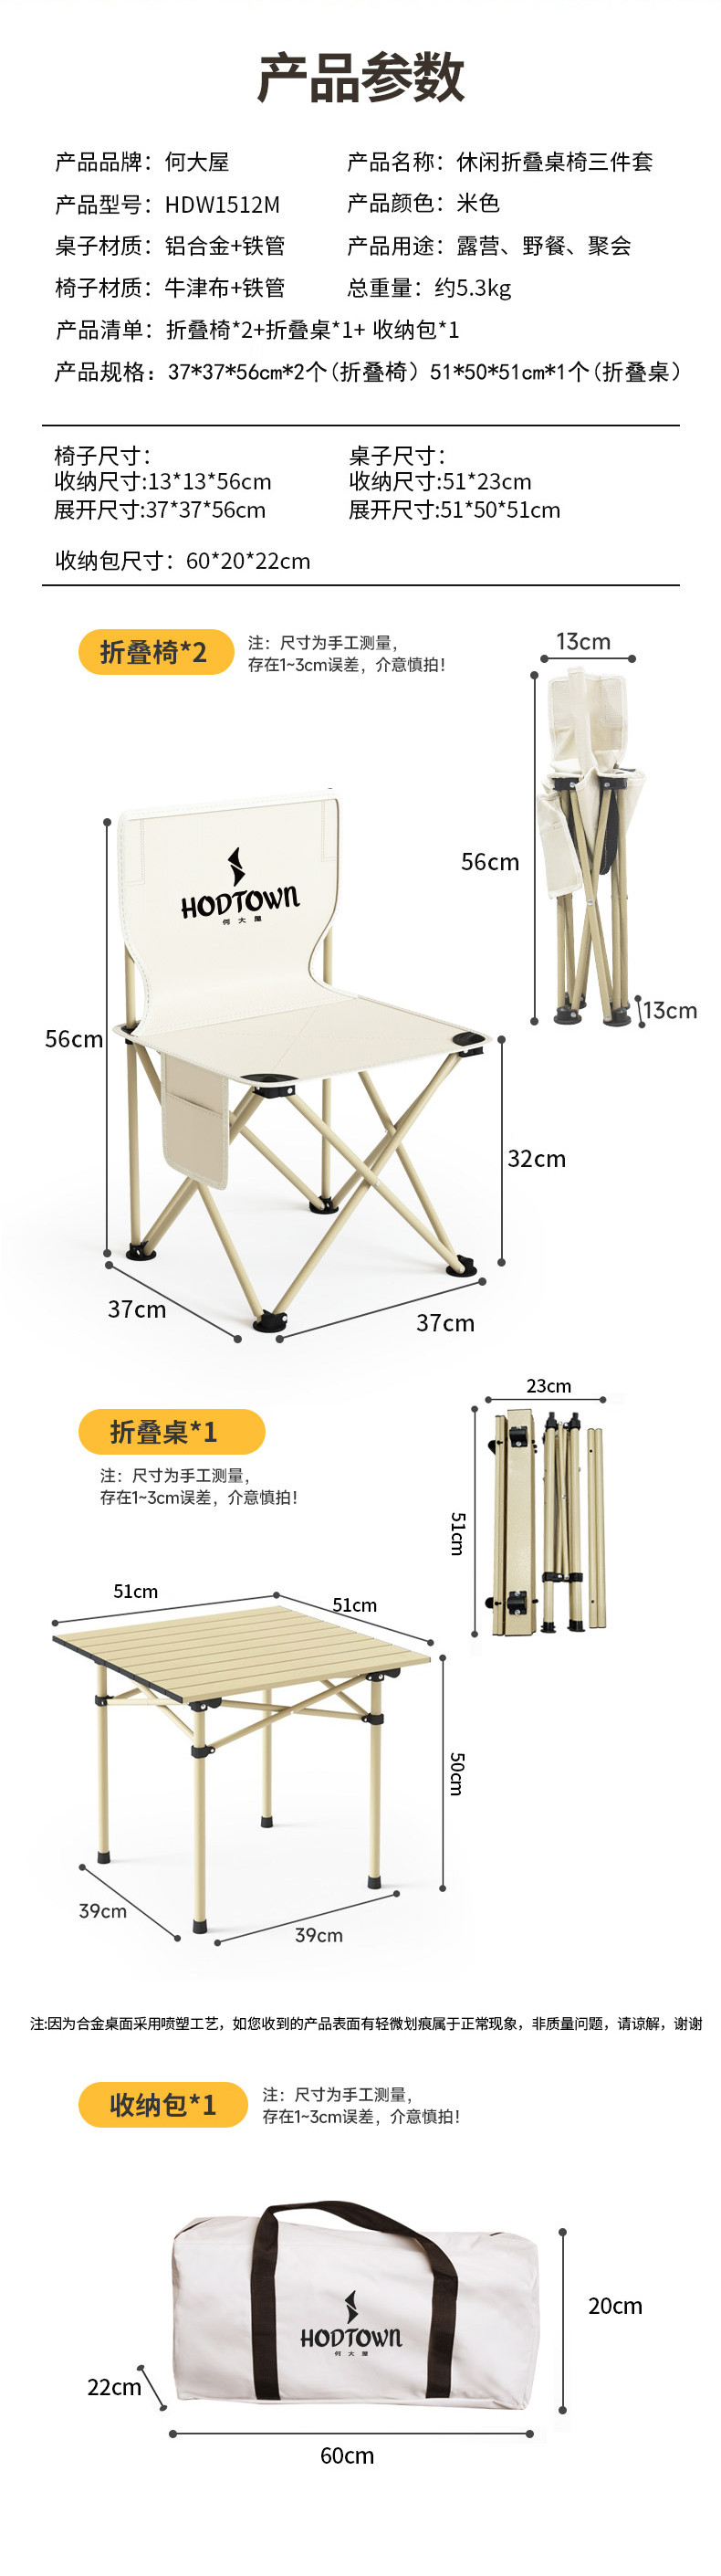 何大屋 休闲折叠桌椅三件套（桌子*1+椅子*2） HDW1512M